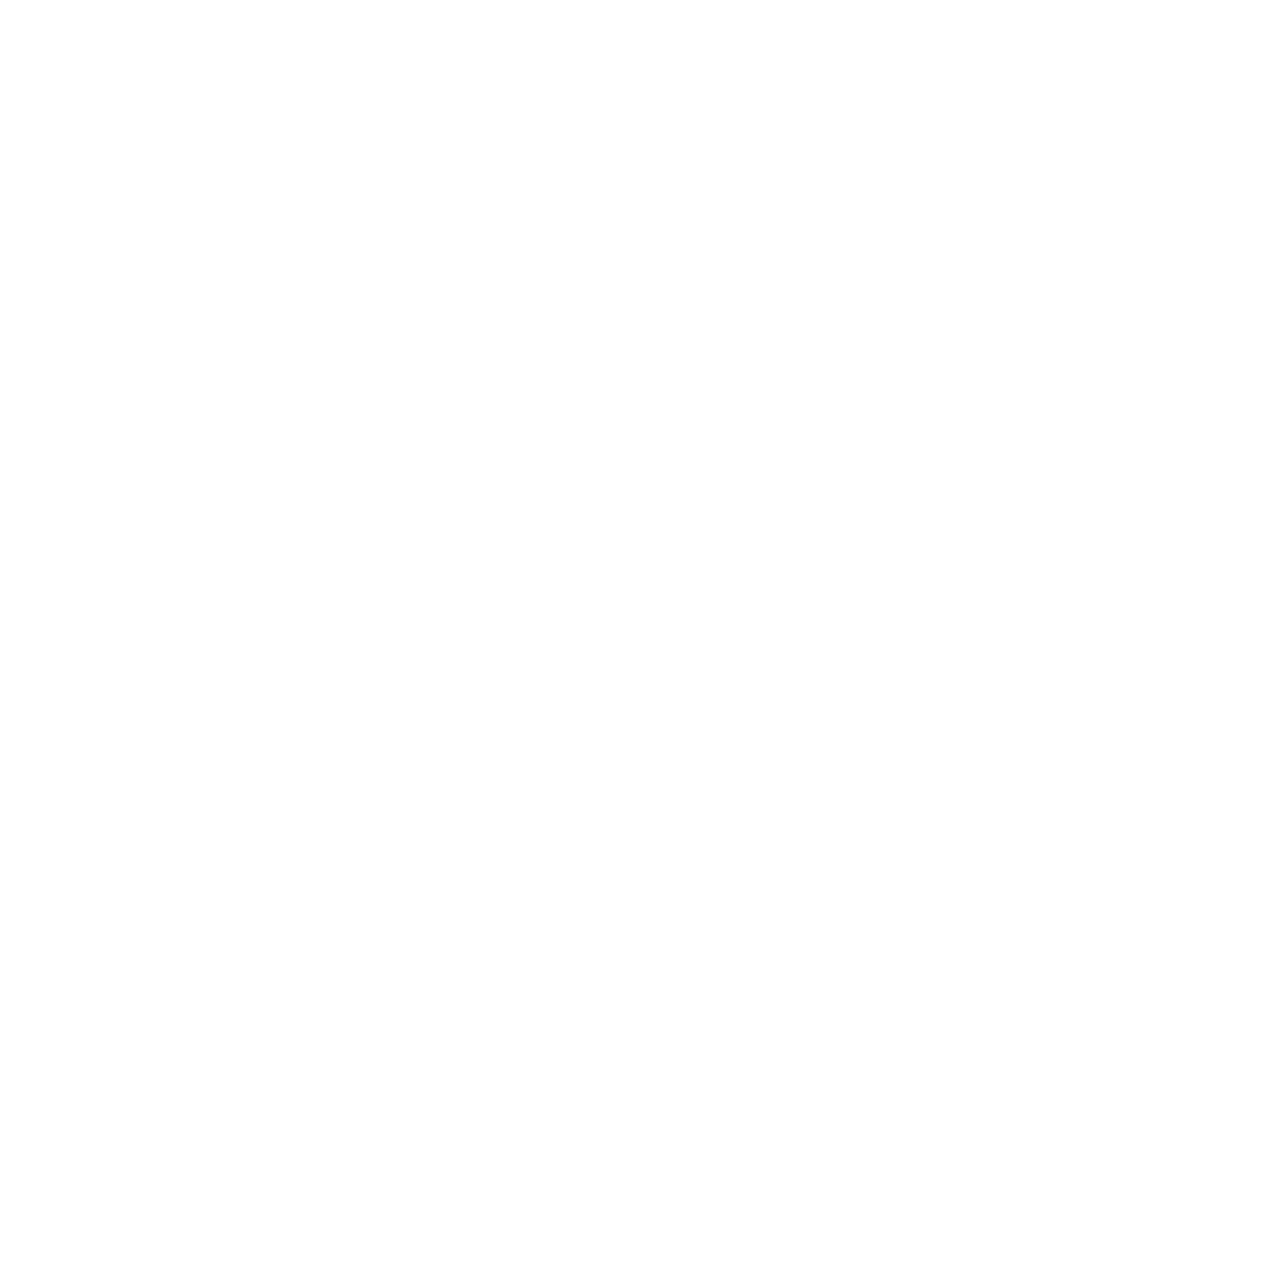 (ASO) Accounting Students Organization